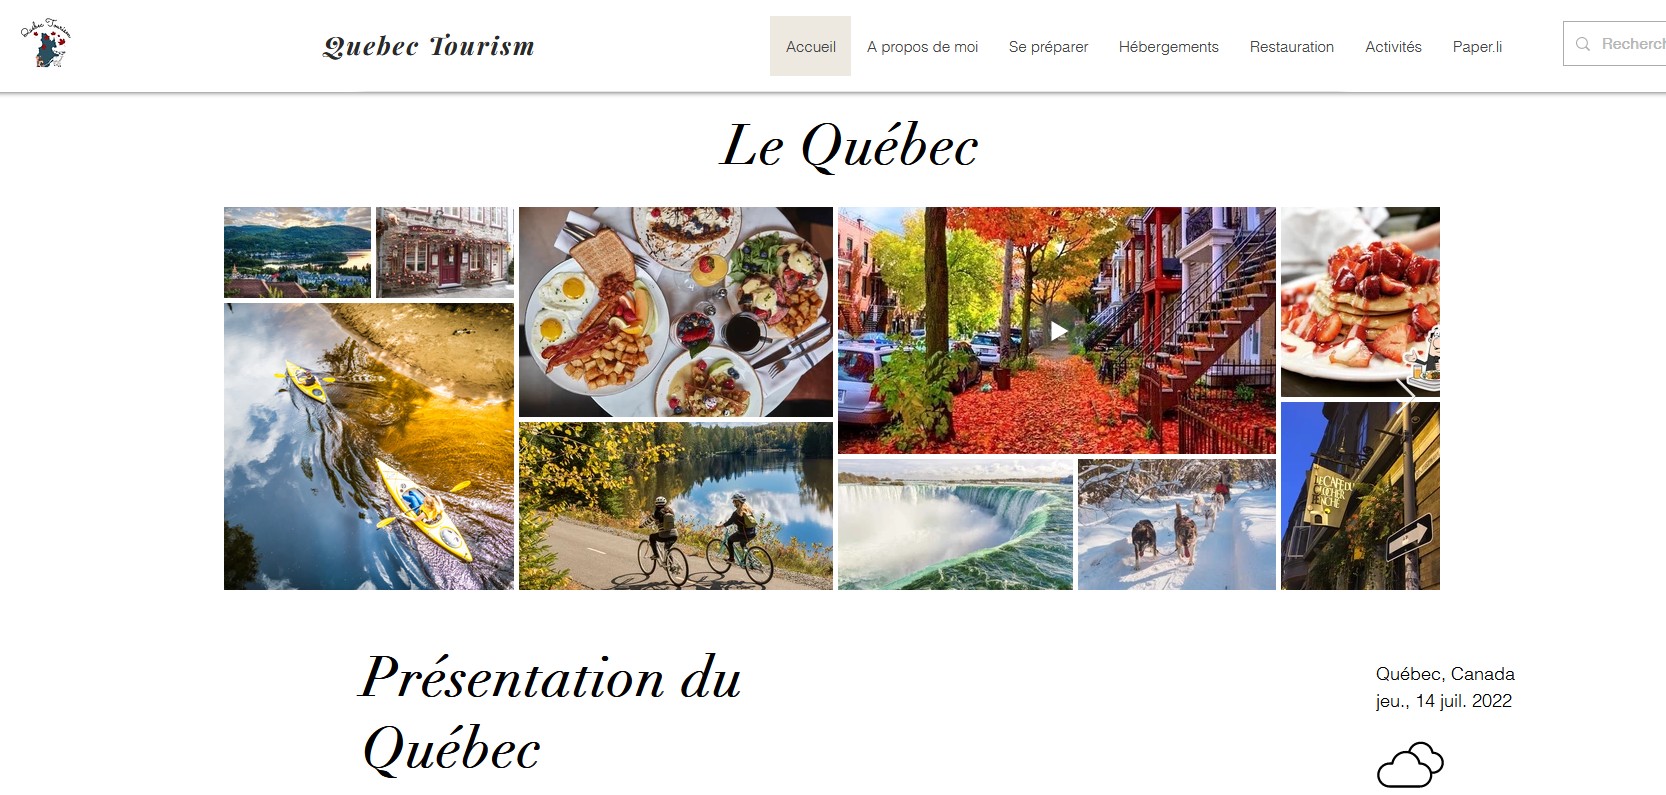 Quebec Tourism